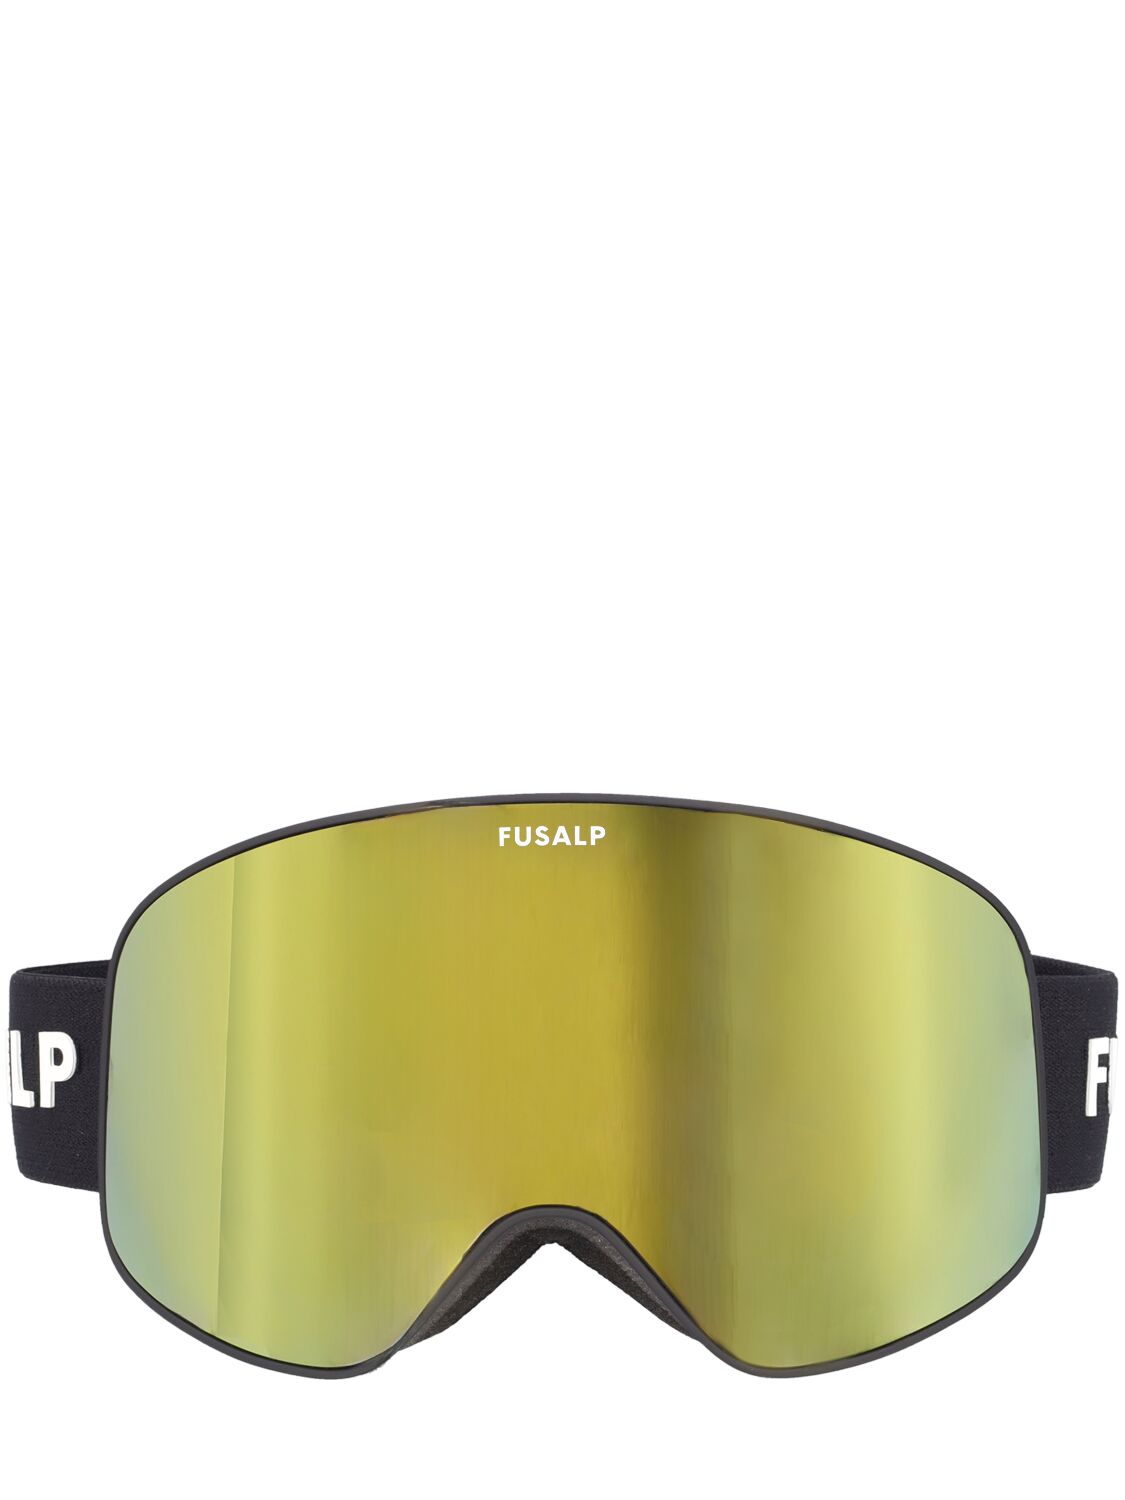 Fusalp Matterhorn Eyes Thin Frame Ski Goggles In Gold